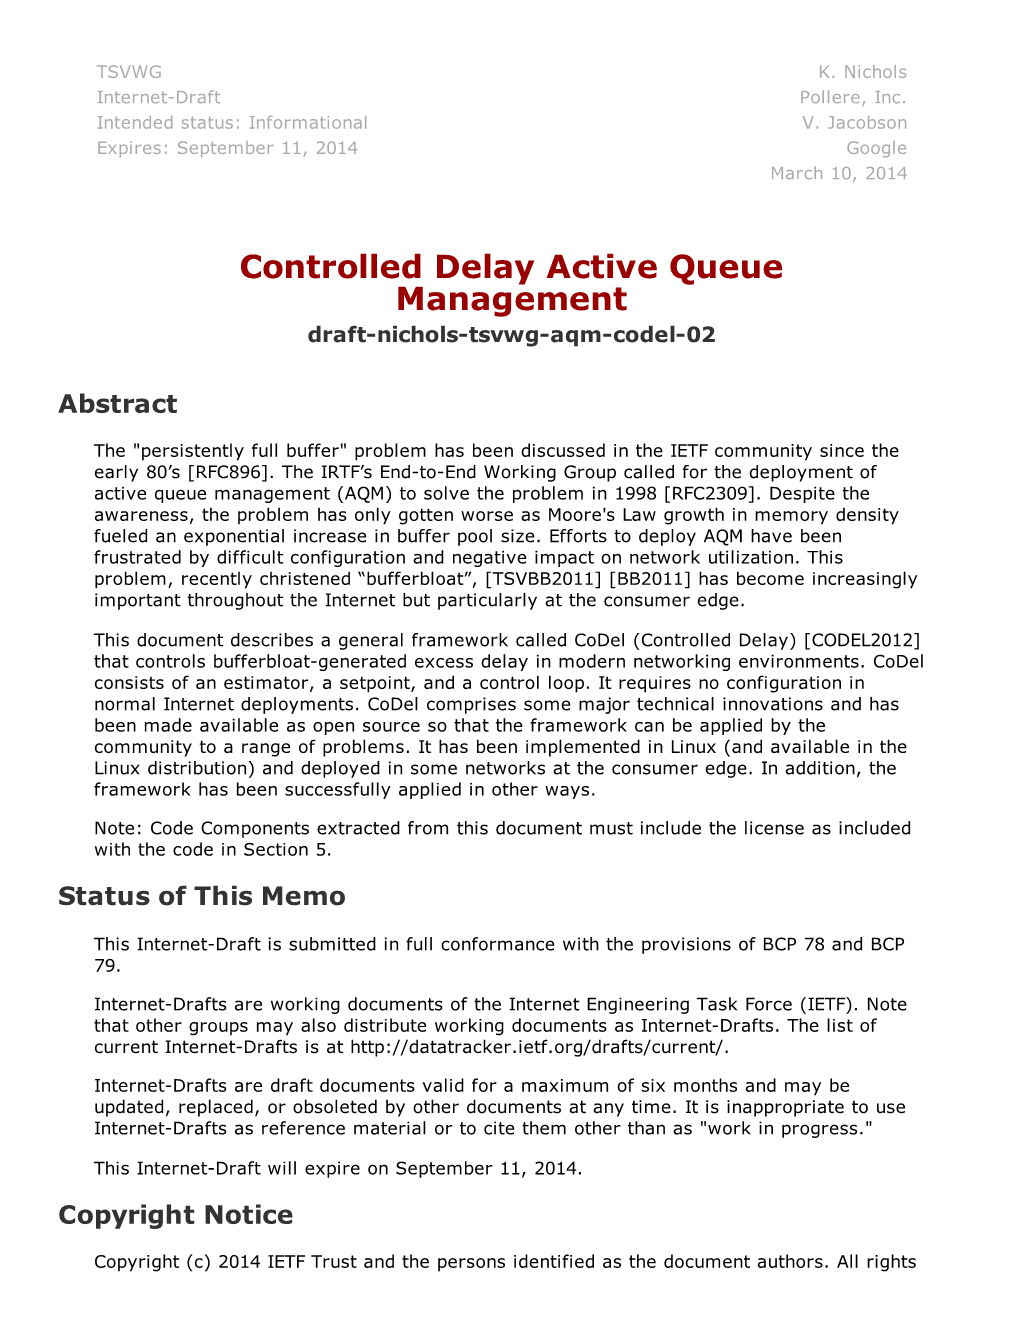 Controlled Delay Active Queue Management Draft­Nichols­Tsvwg­Aqm­Codel­02